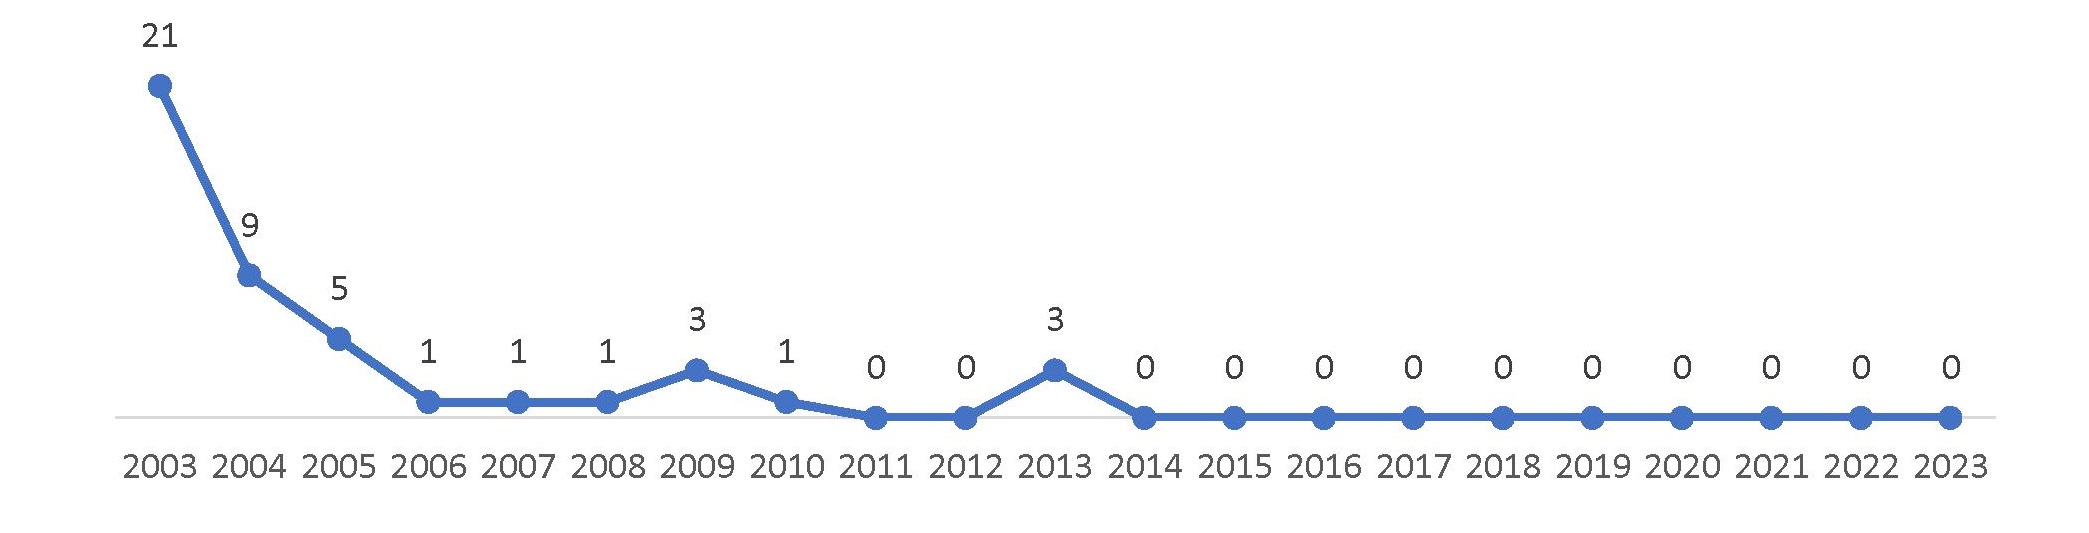 Рисунок 15 – Распределение количества патентных публикаций Mitsubishi Electric по годам в период с 2003 г. по 01.10.2023 г.